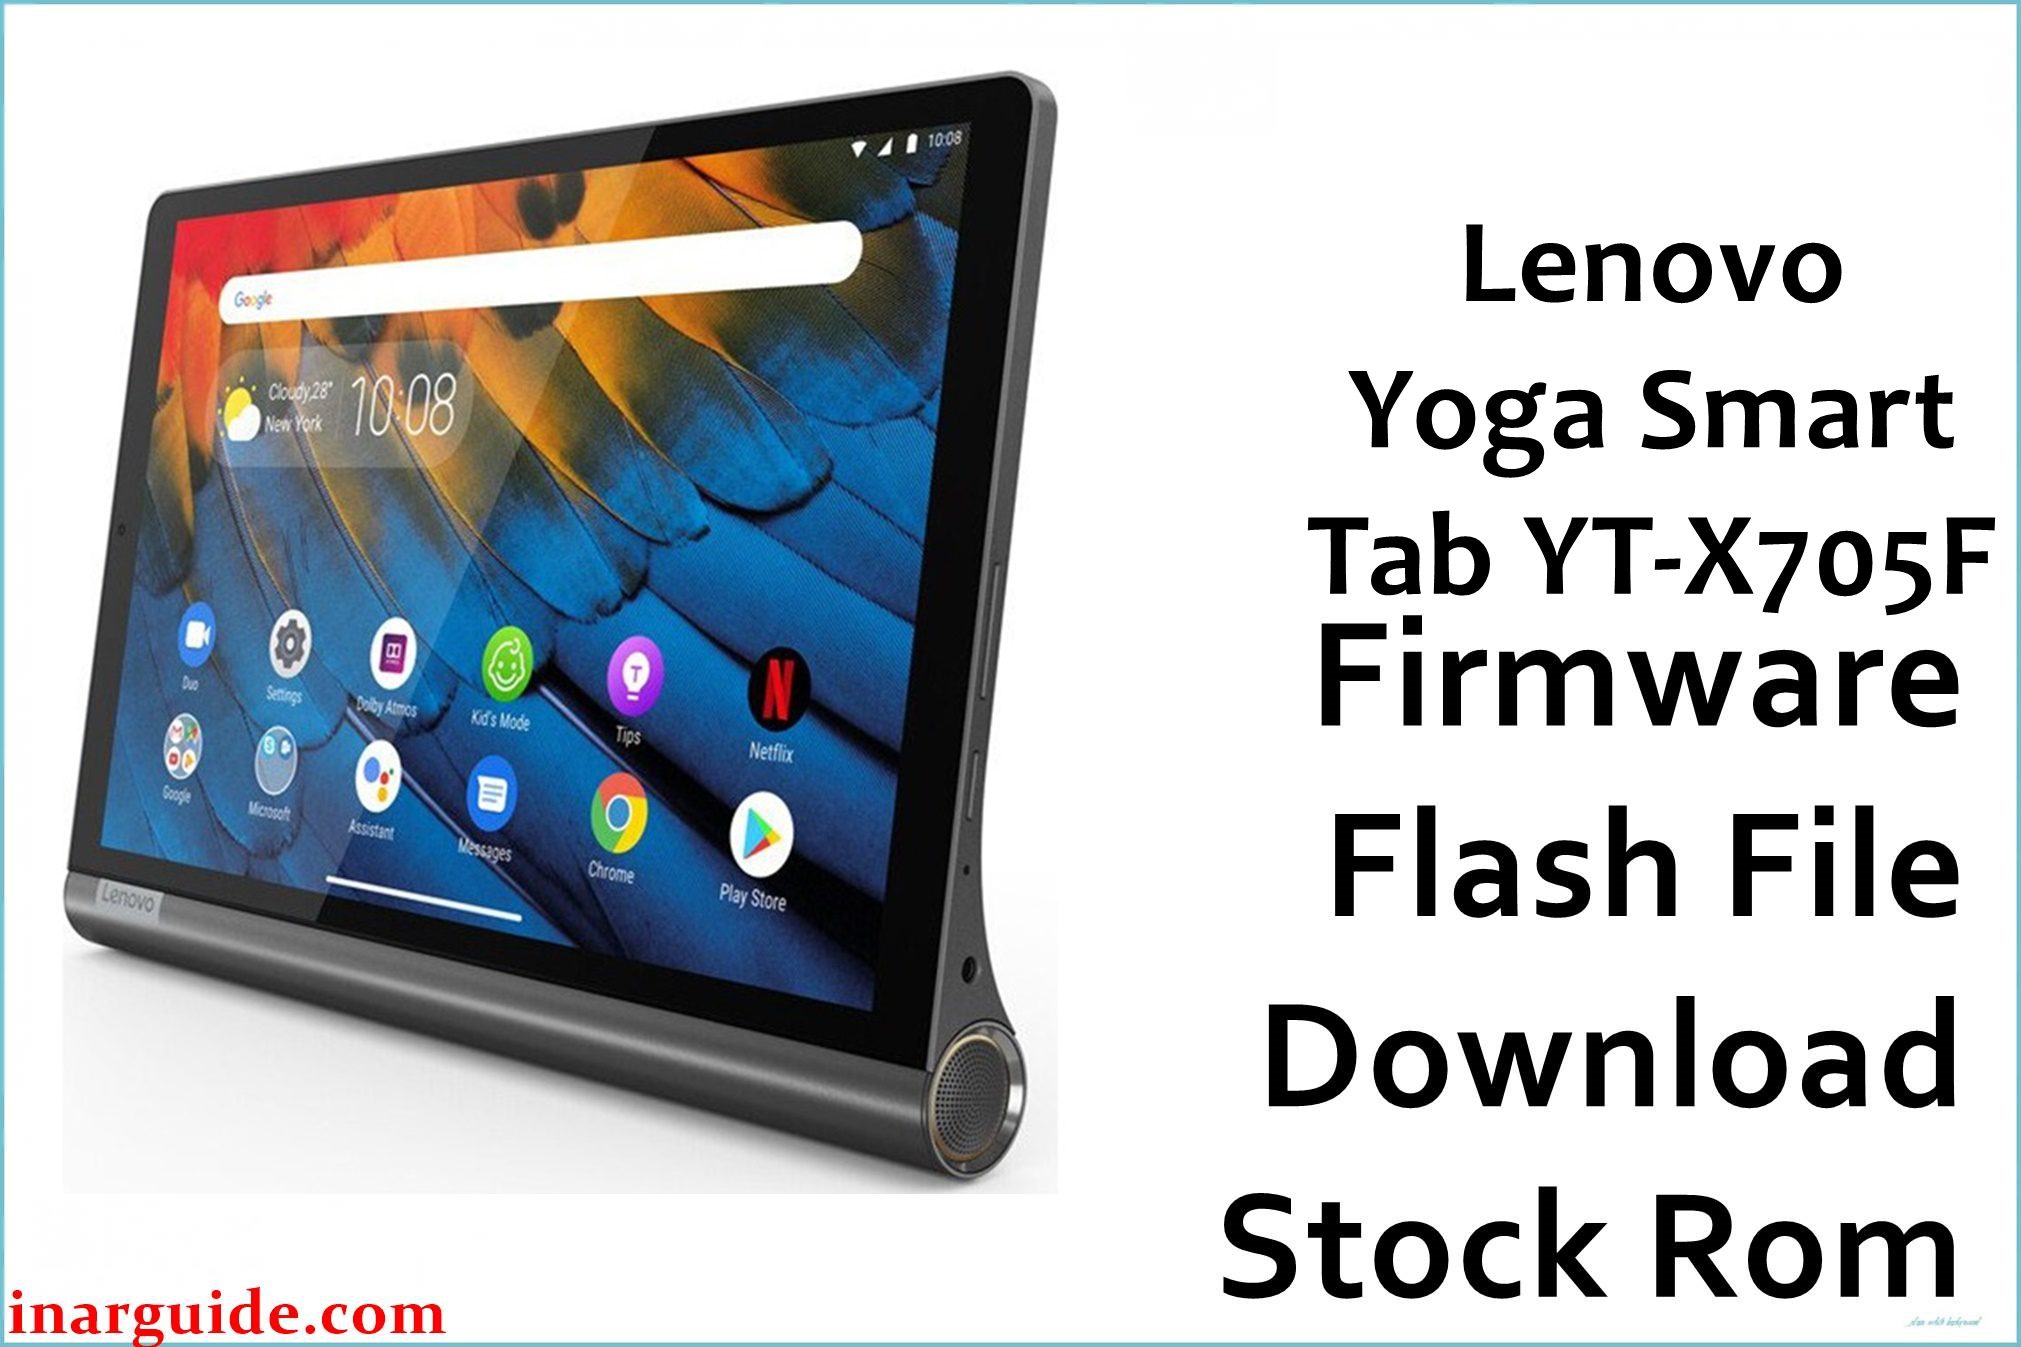 Lenovo Yoga Smart Tab YT X705F